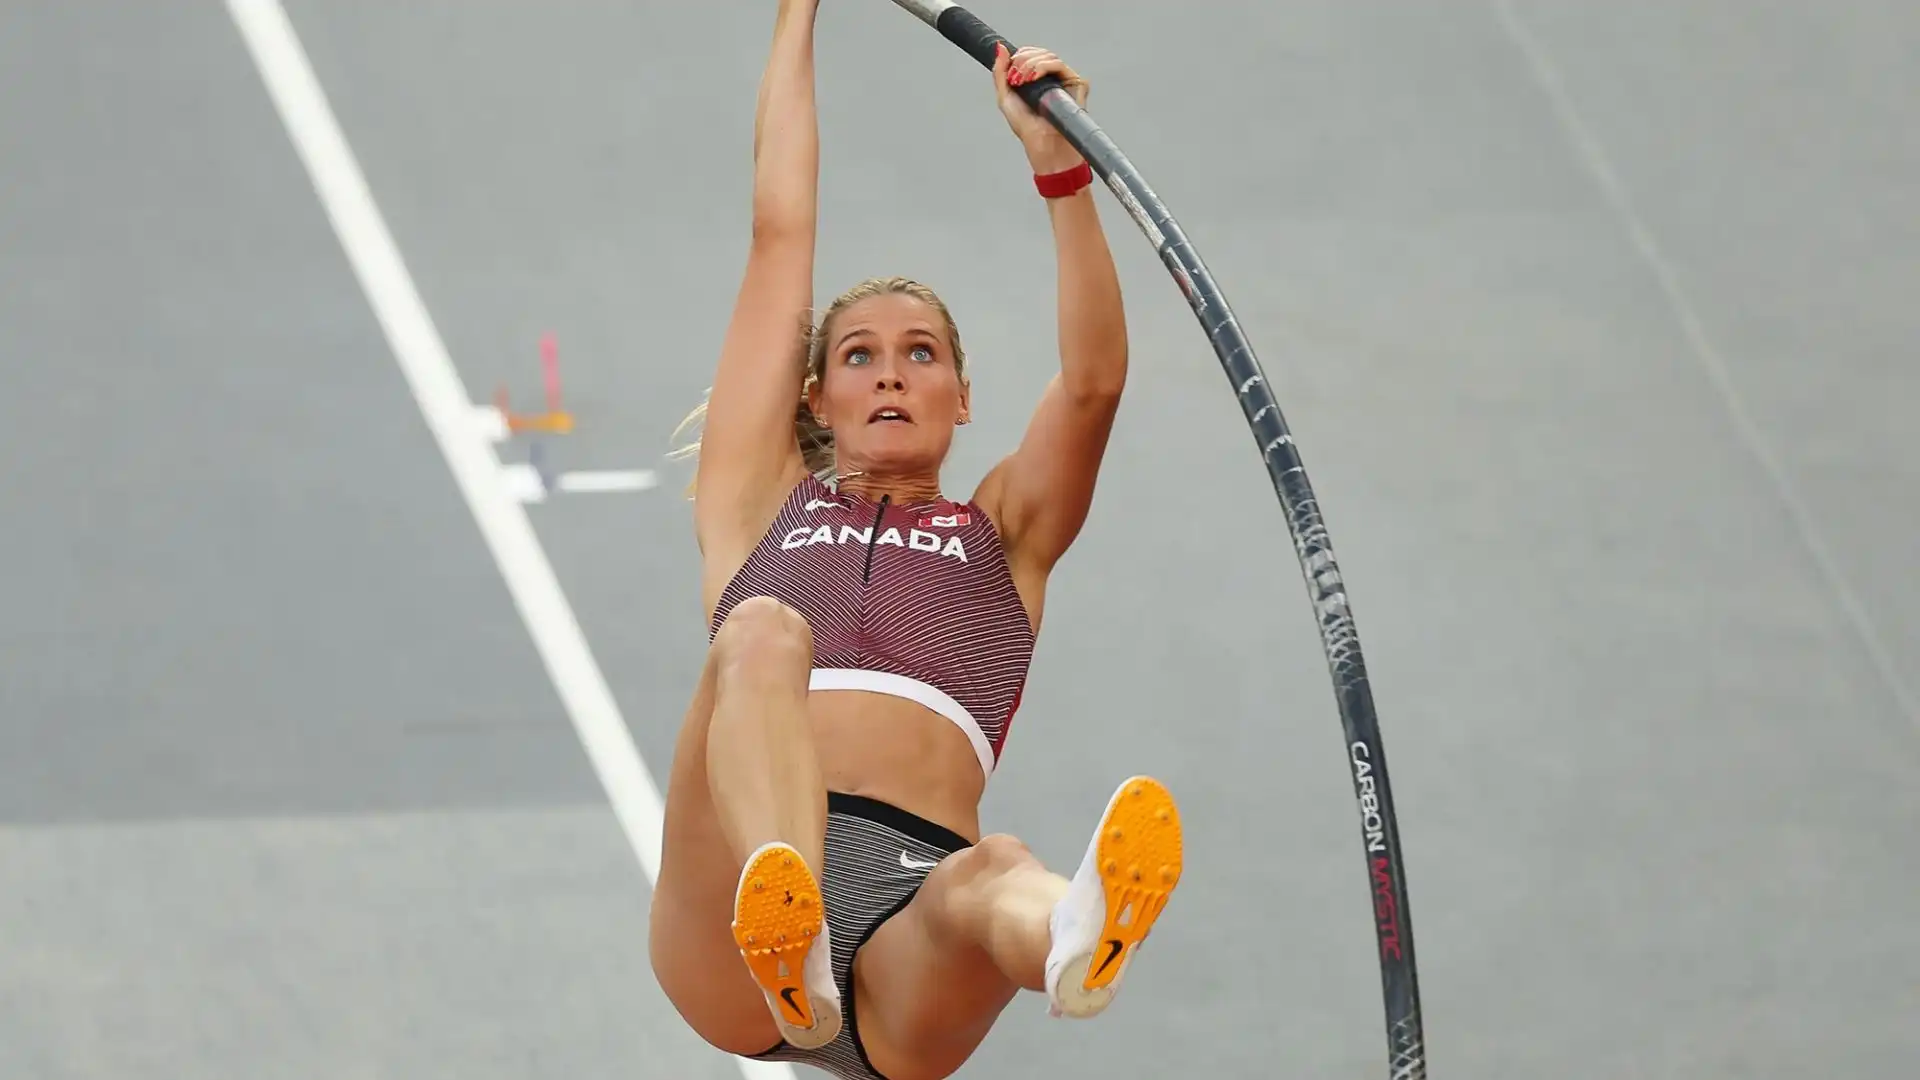 La saltatrice con l'asta canadese si è già qualificata alle Olimpiadi di Parigi 2024